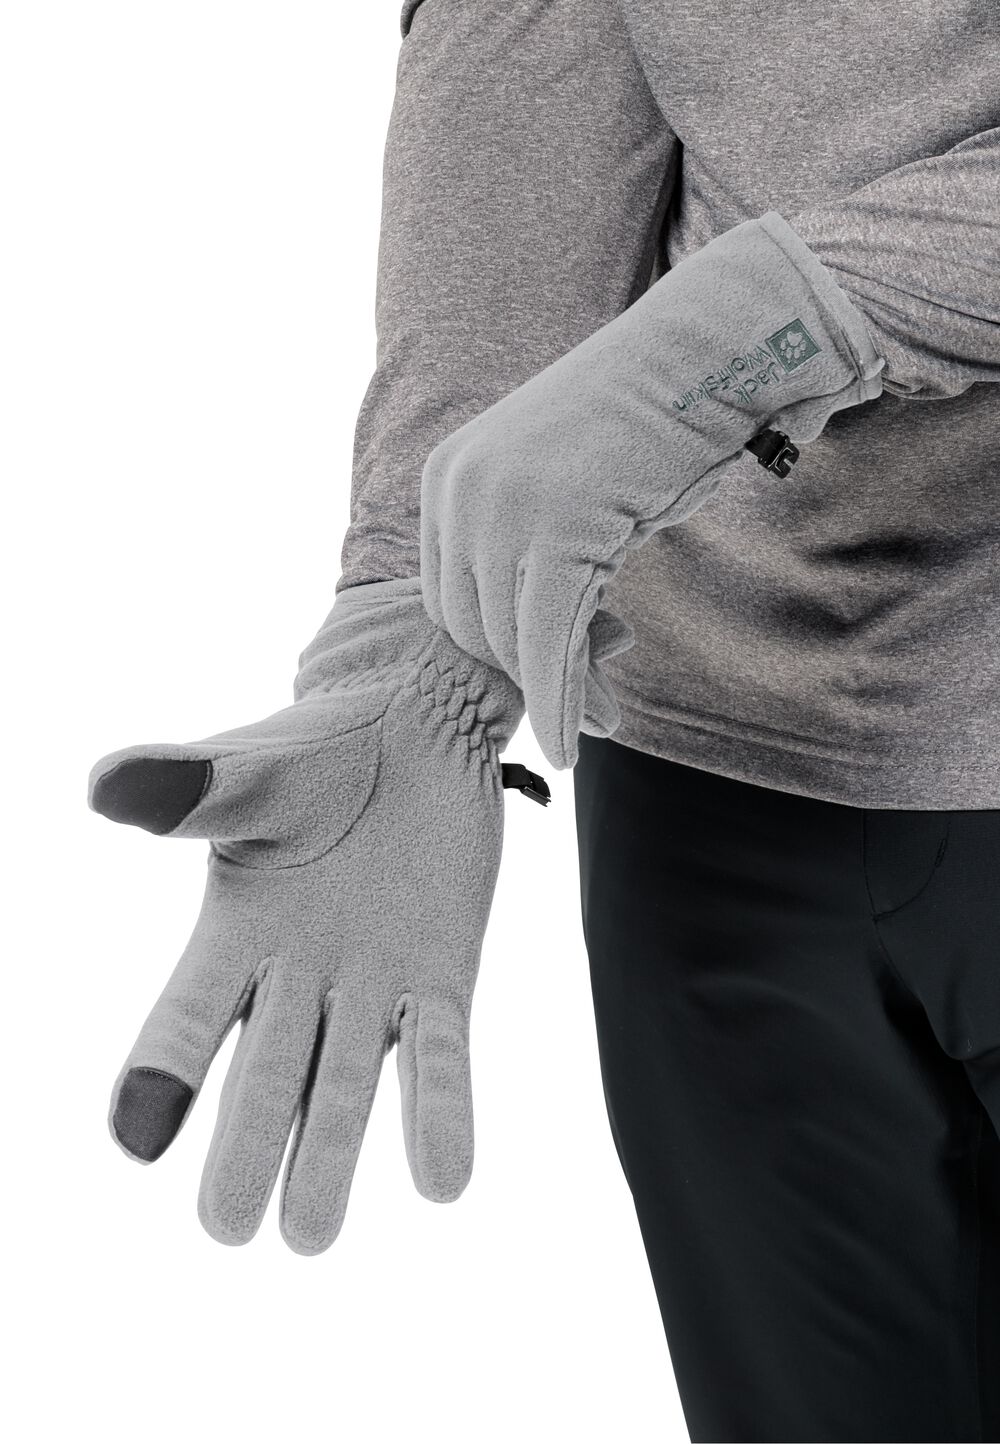 Jack Wolfskin Real Stuff Glove Fleece handschoenen XL gray slate grey